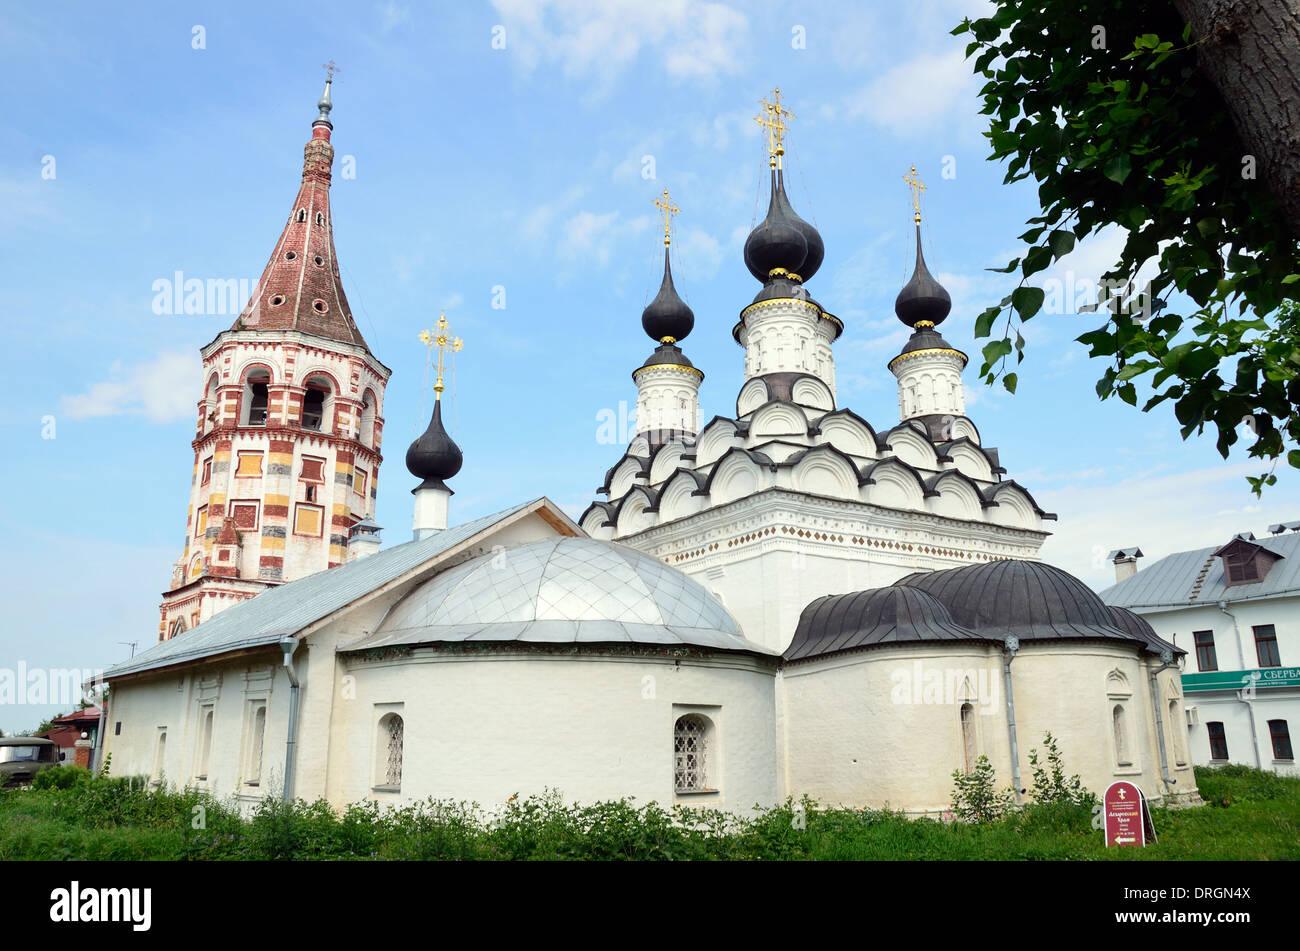 St Lazarus' church of Suzdal, Russia Stock Photo